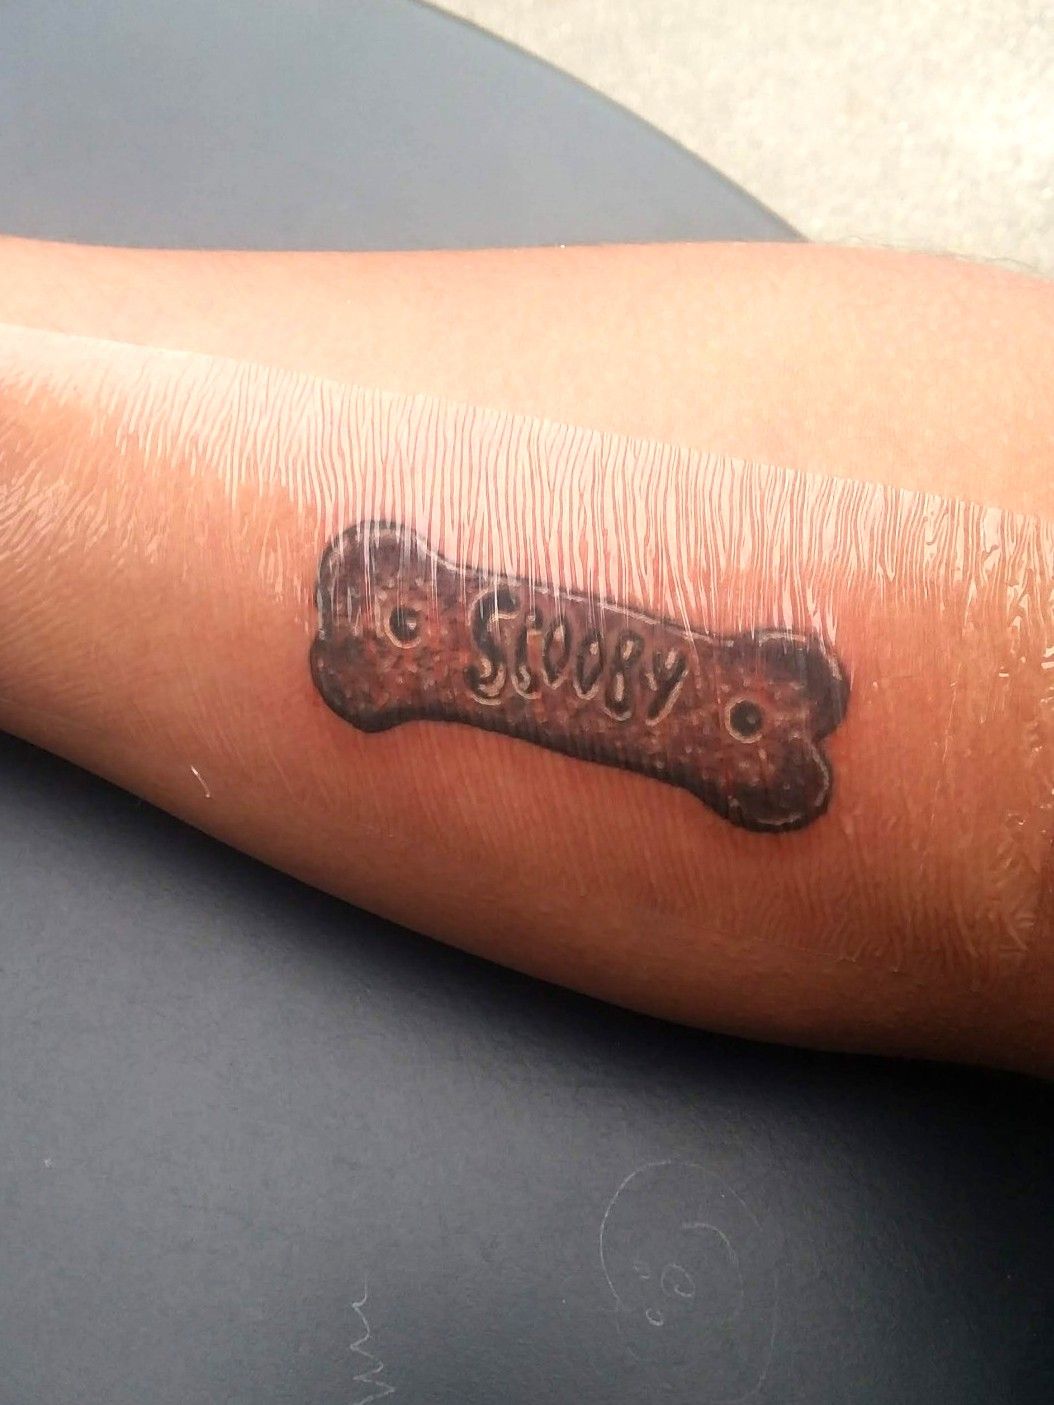 60 Scooby Doo Tattoo Designs For Men  Cartoon Ink Ideas  Scooby doo tattoo  Tattoo designs Tattoo designs men